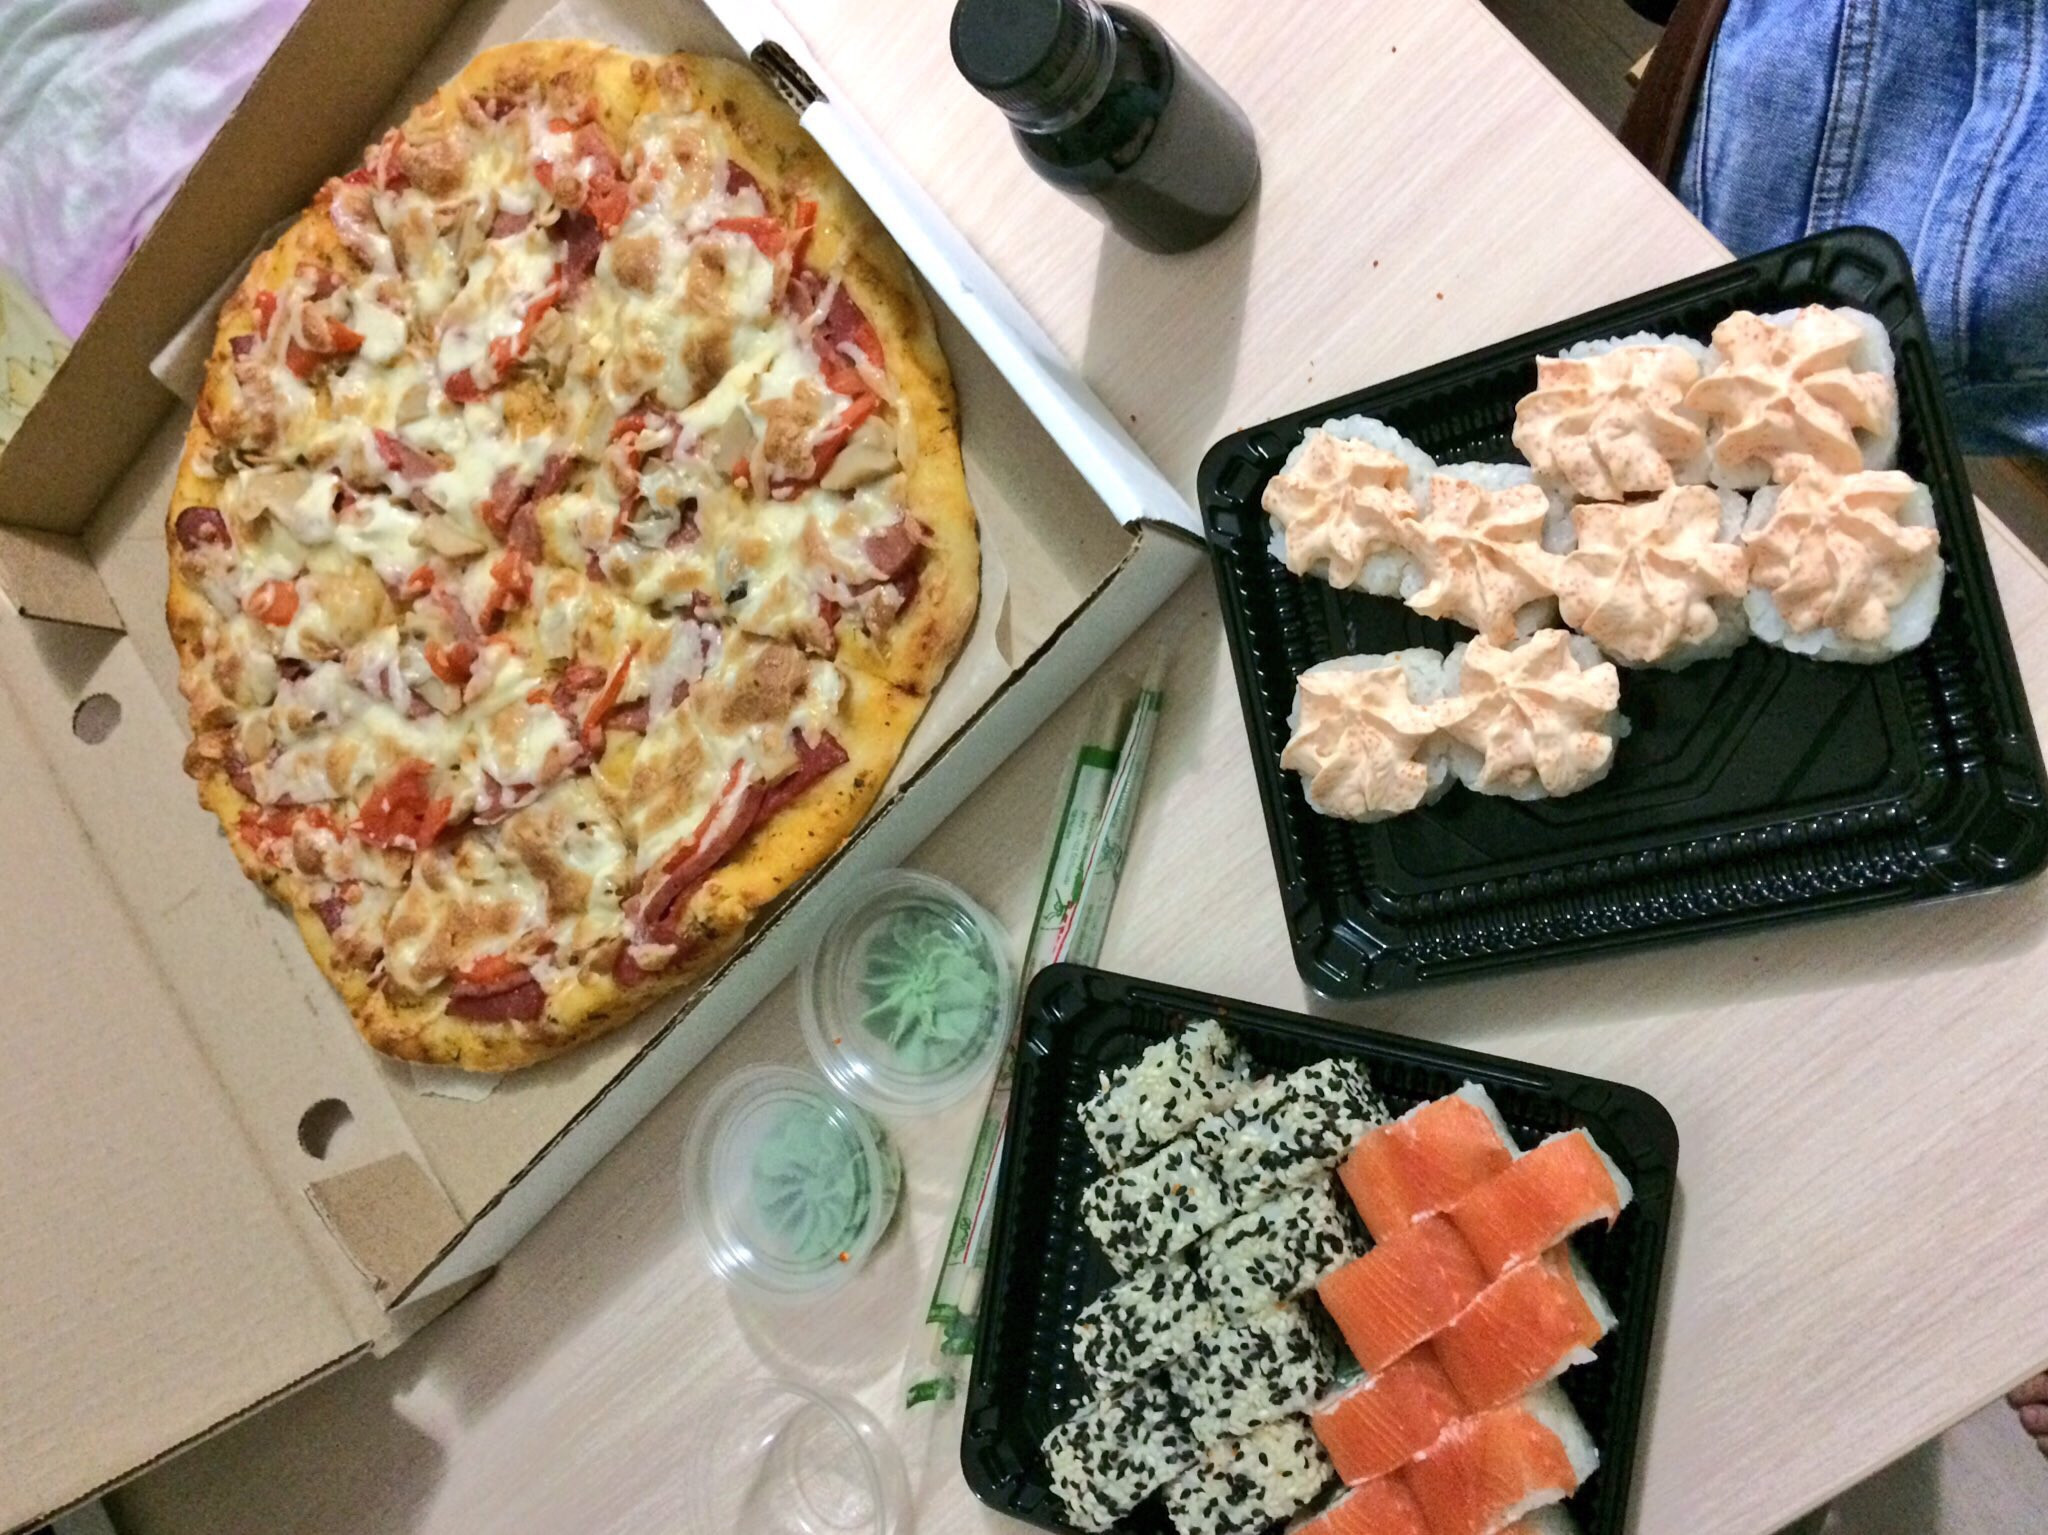 фото роллов и пиццы на столе дома фото 5